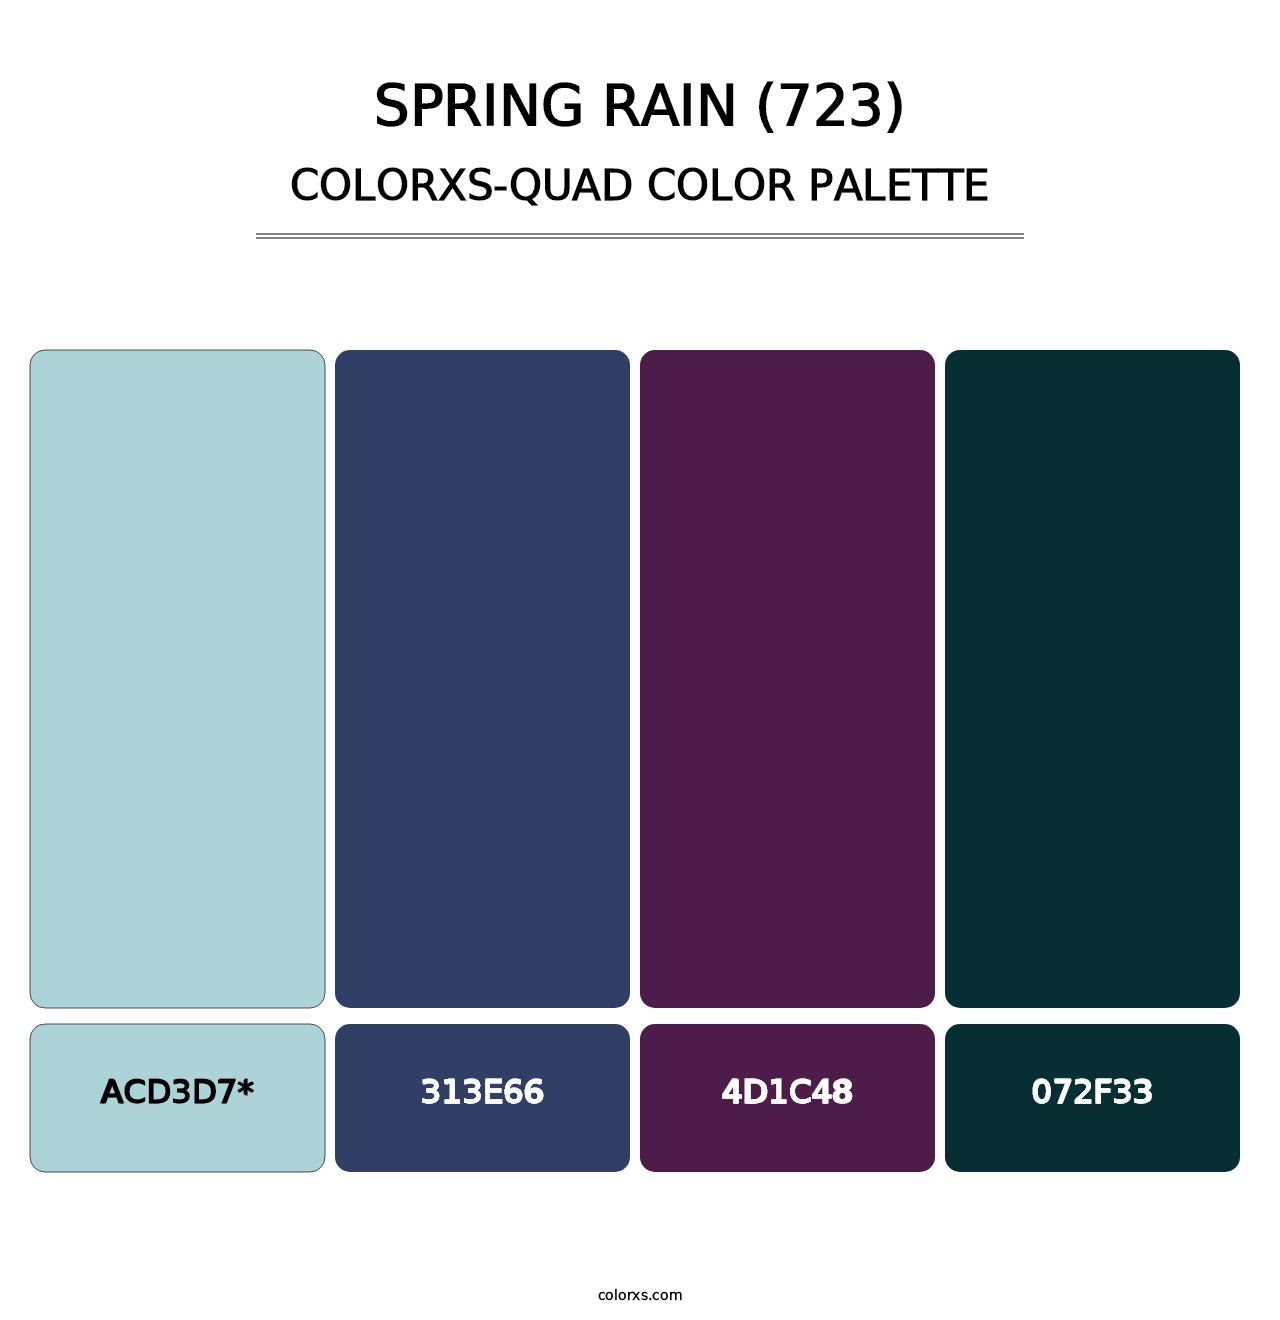 Spring Rain (723) - Colorxs Quad Palette